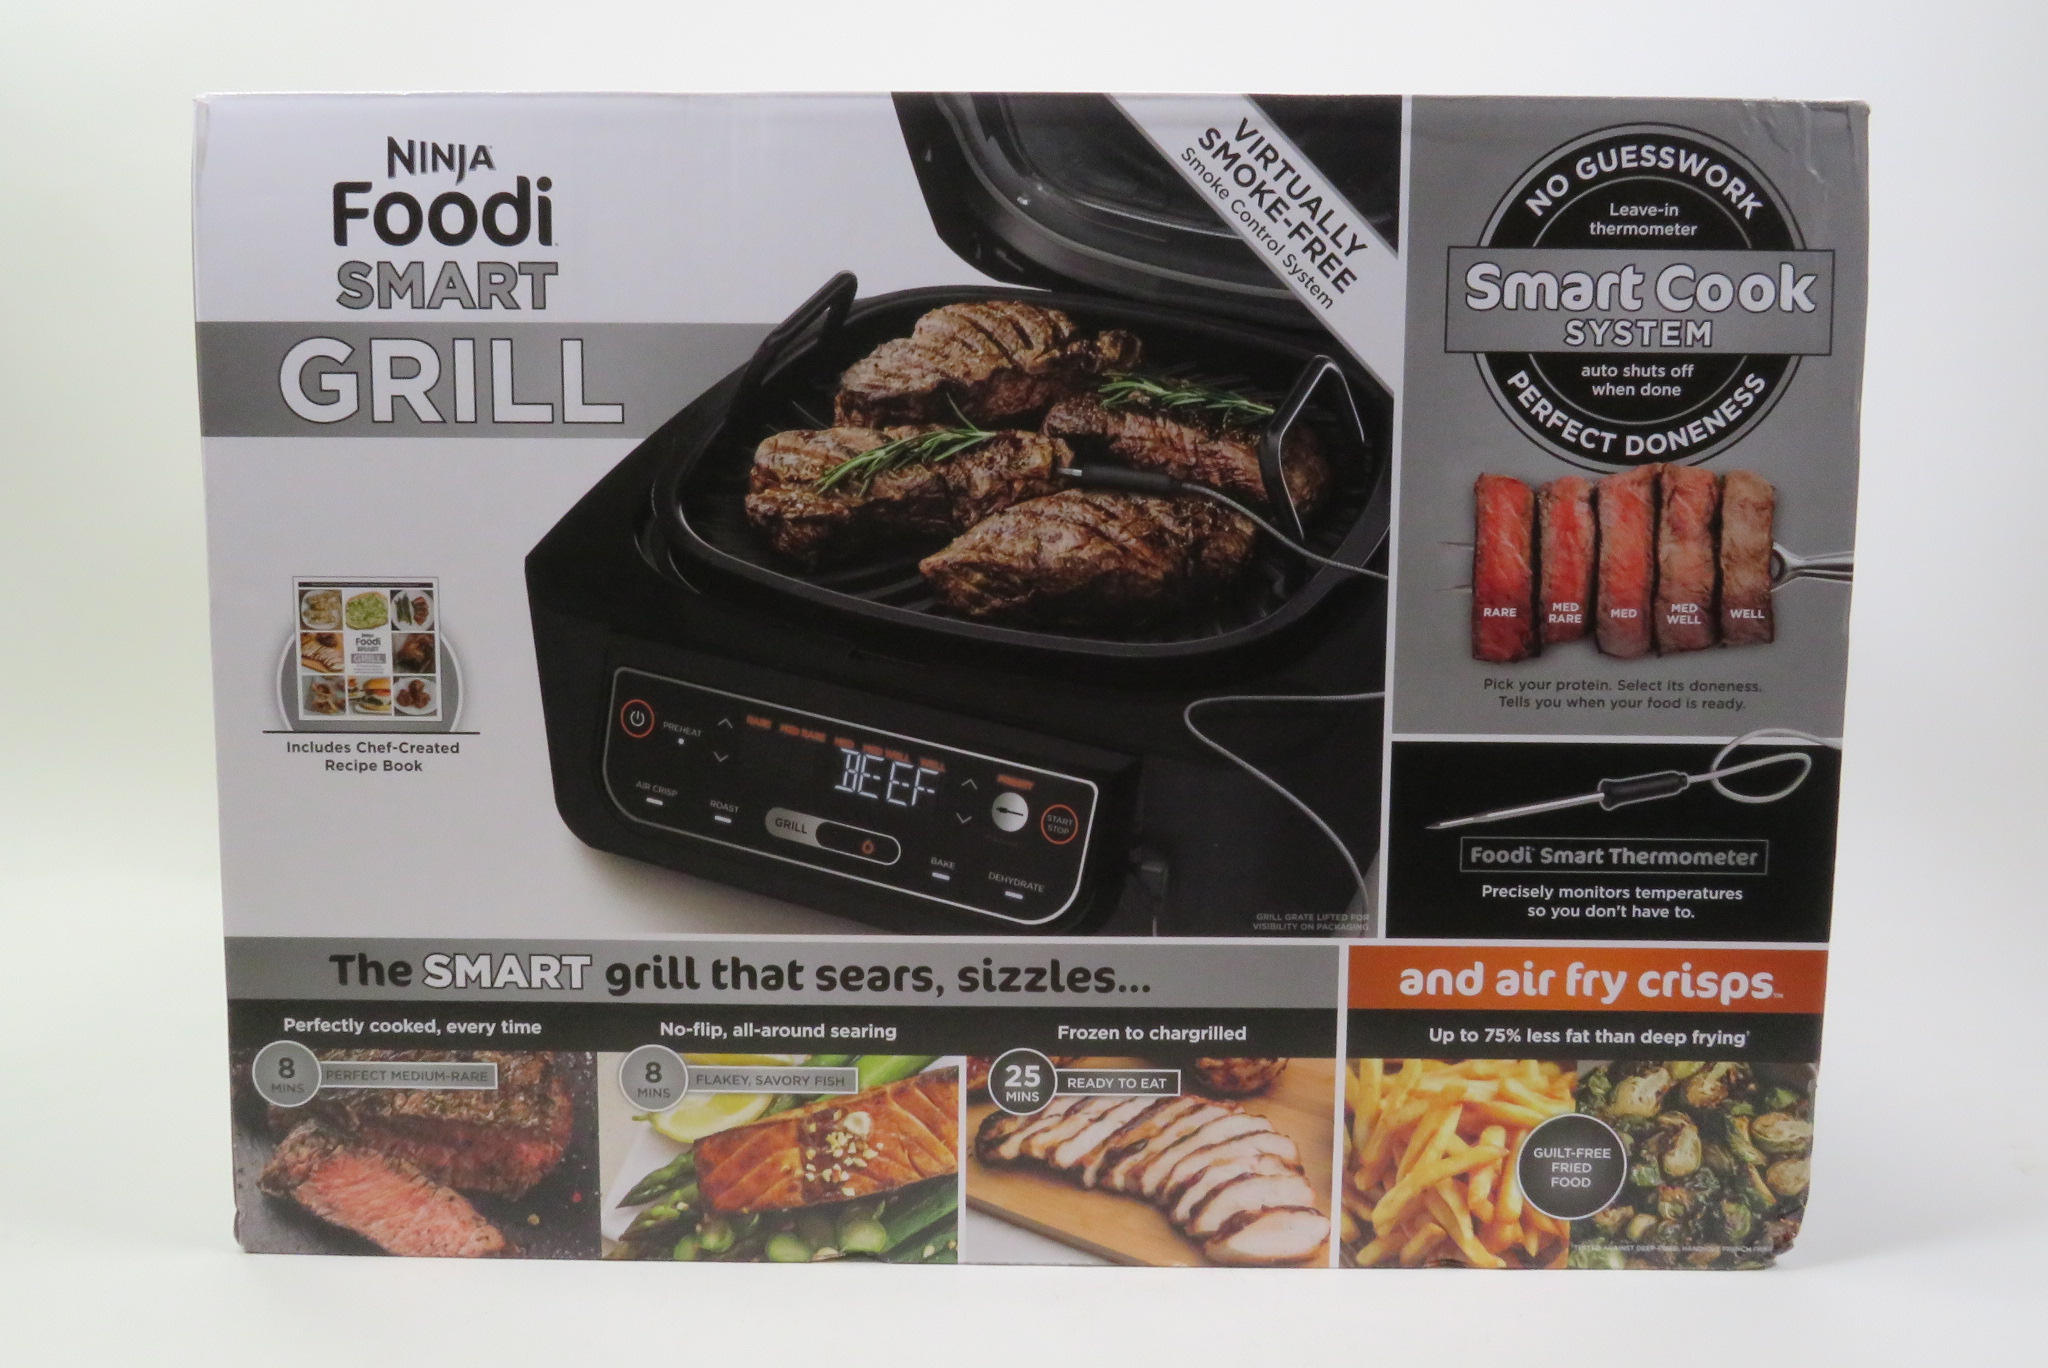 Ninja Foodi LG451BK 5-in-1 Smart Grill